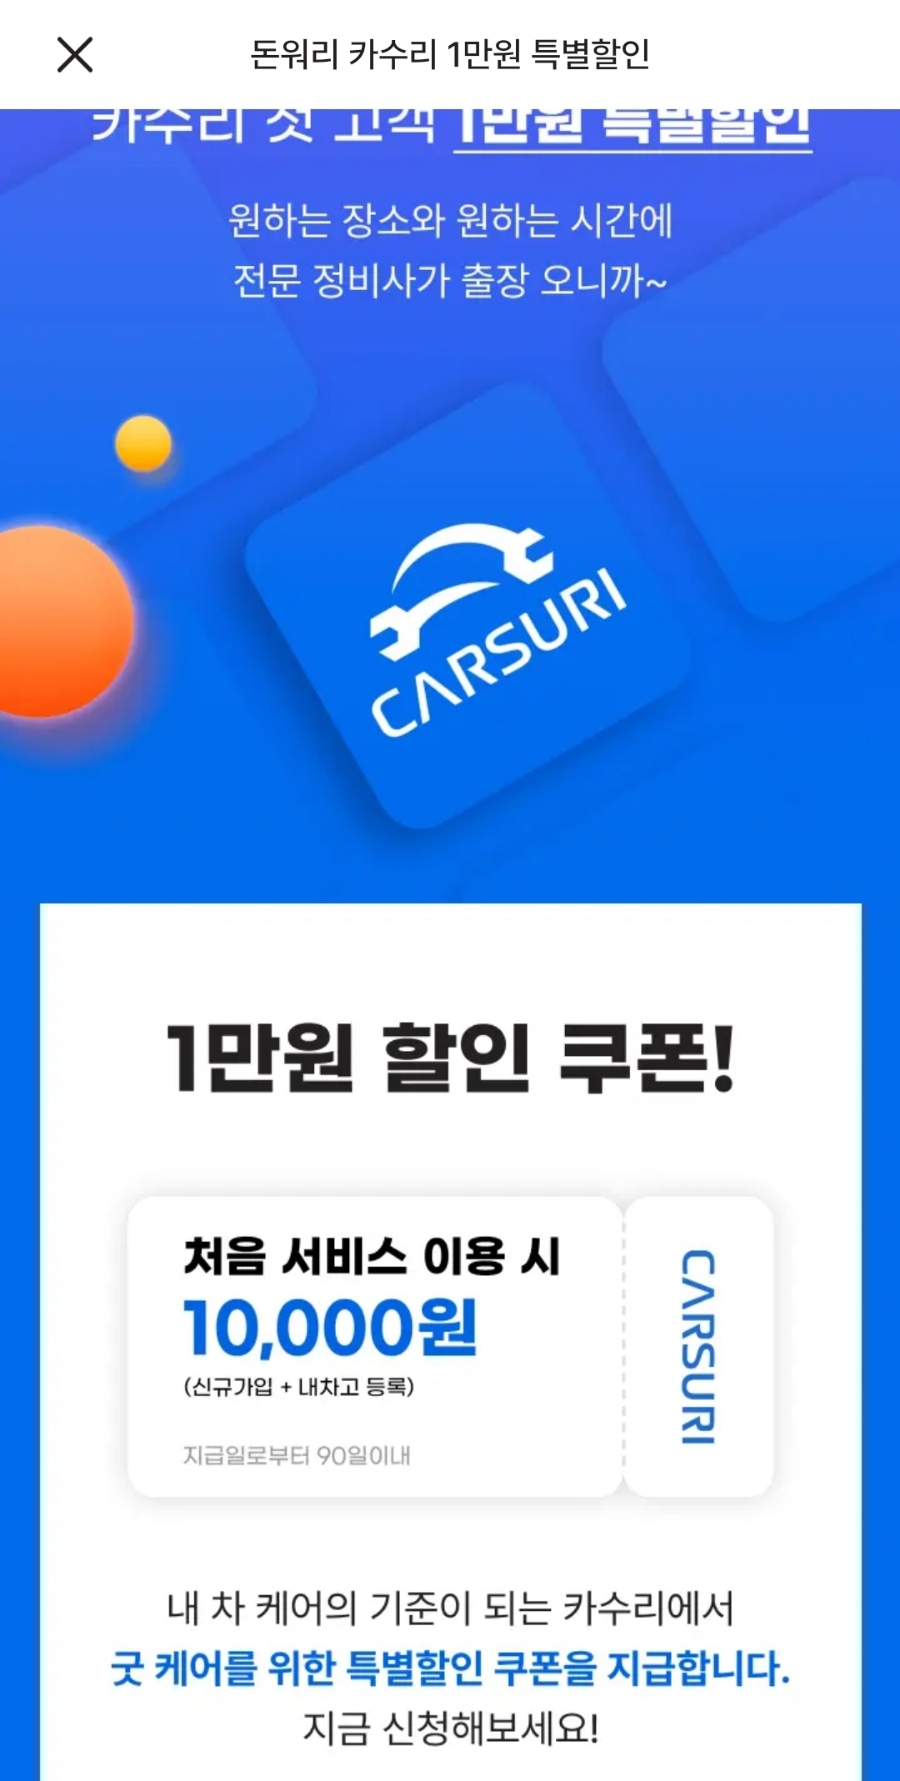 카수리 KA4 카니발 배터리교환 출장 서비스로 겨울캠핑 준비 ~!!